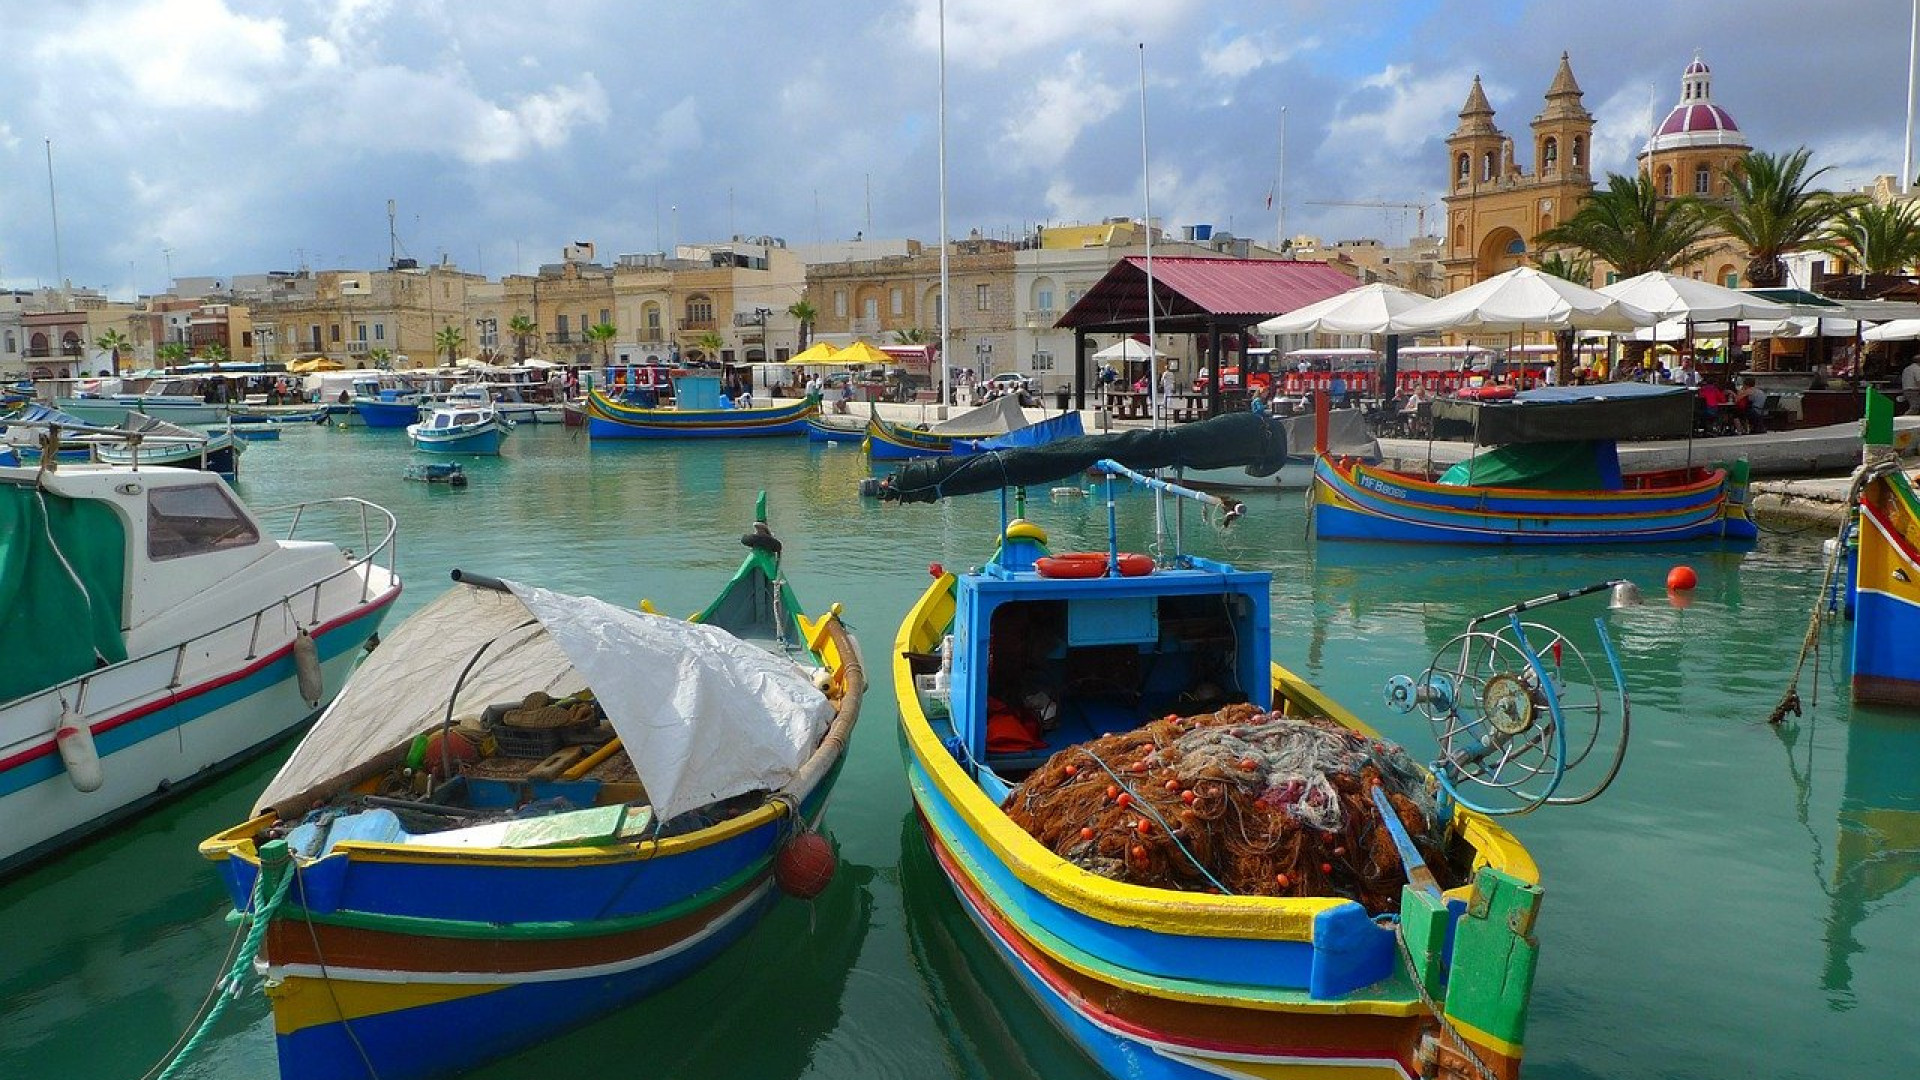 Malta, Sicília e Sardenha: três joias do Mediterrâneo para descobrir